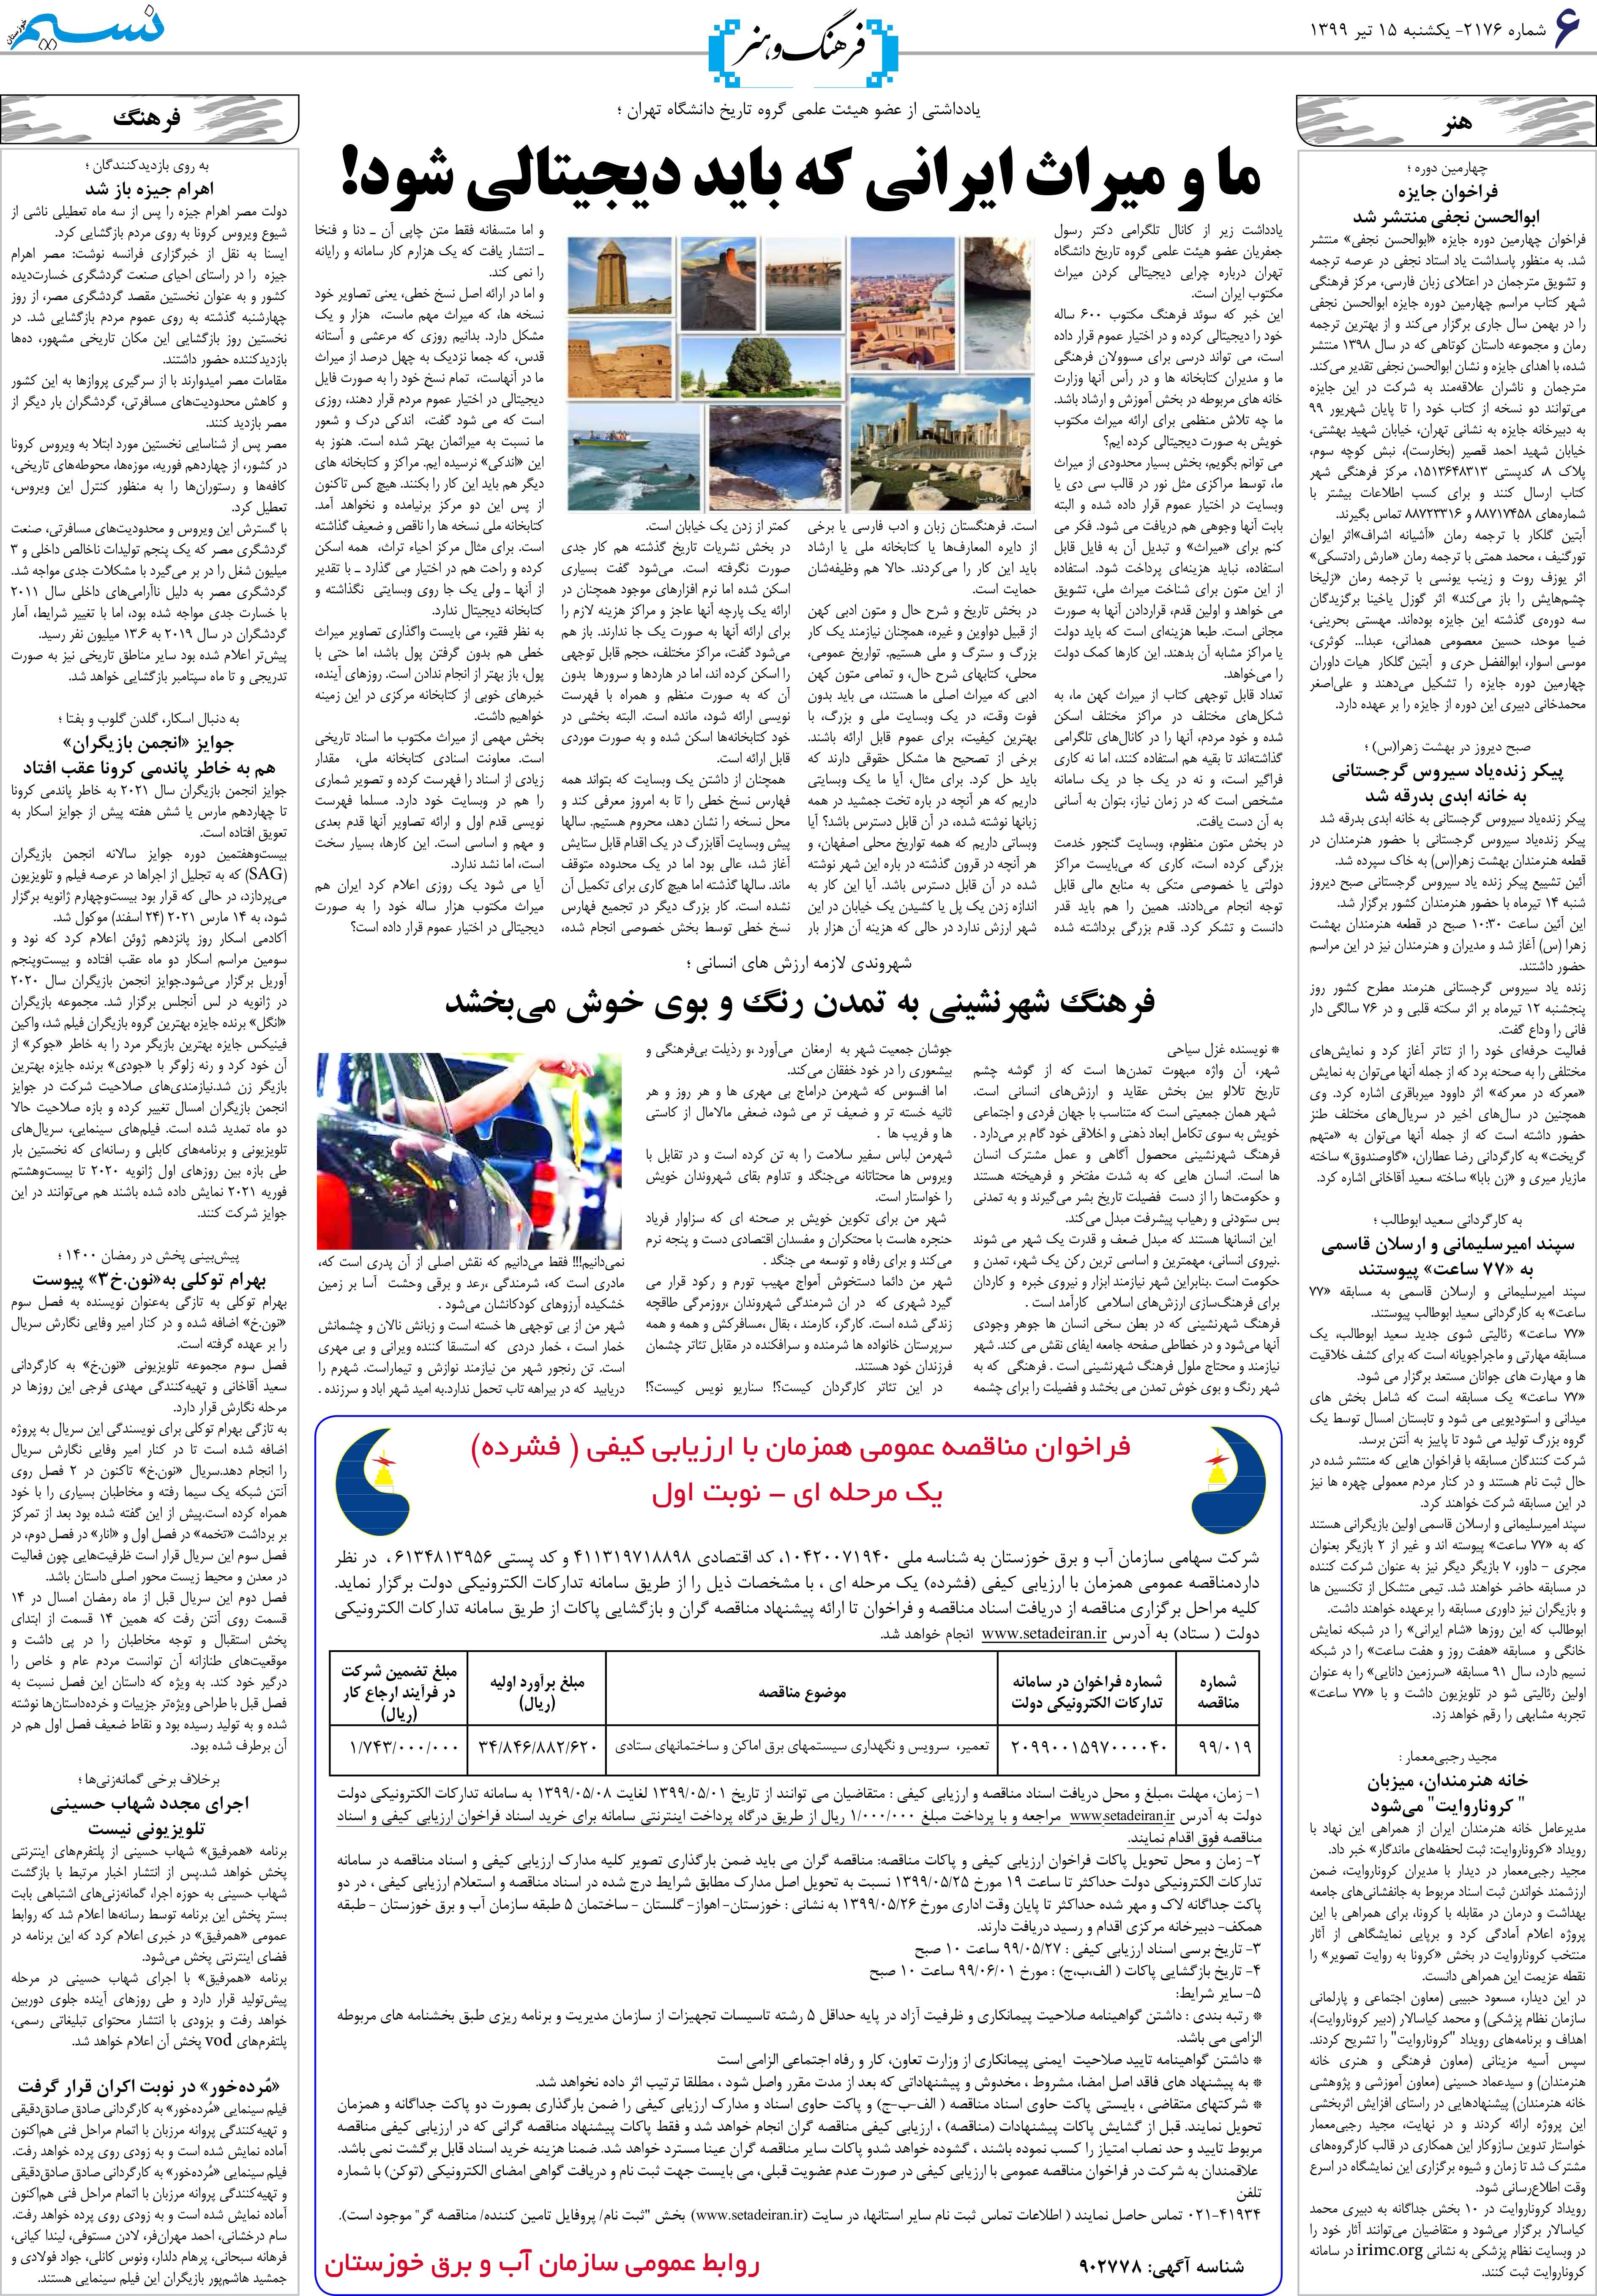 صفحه فرهنگ و هنر روزنامه نسیم شماره 2176